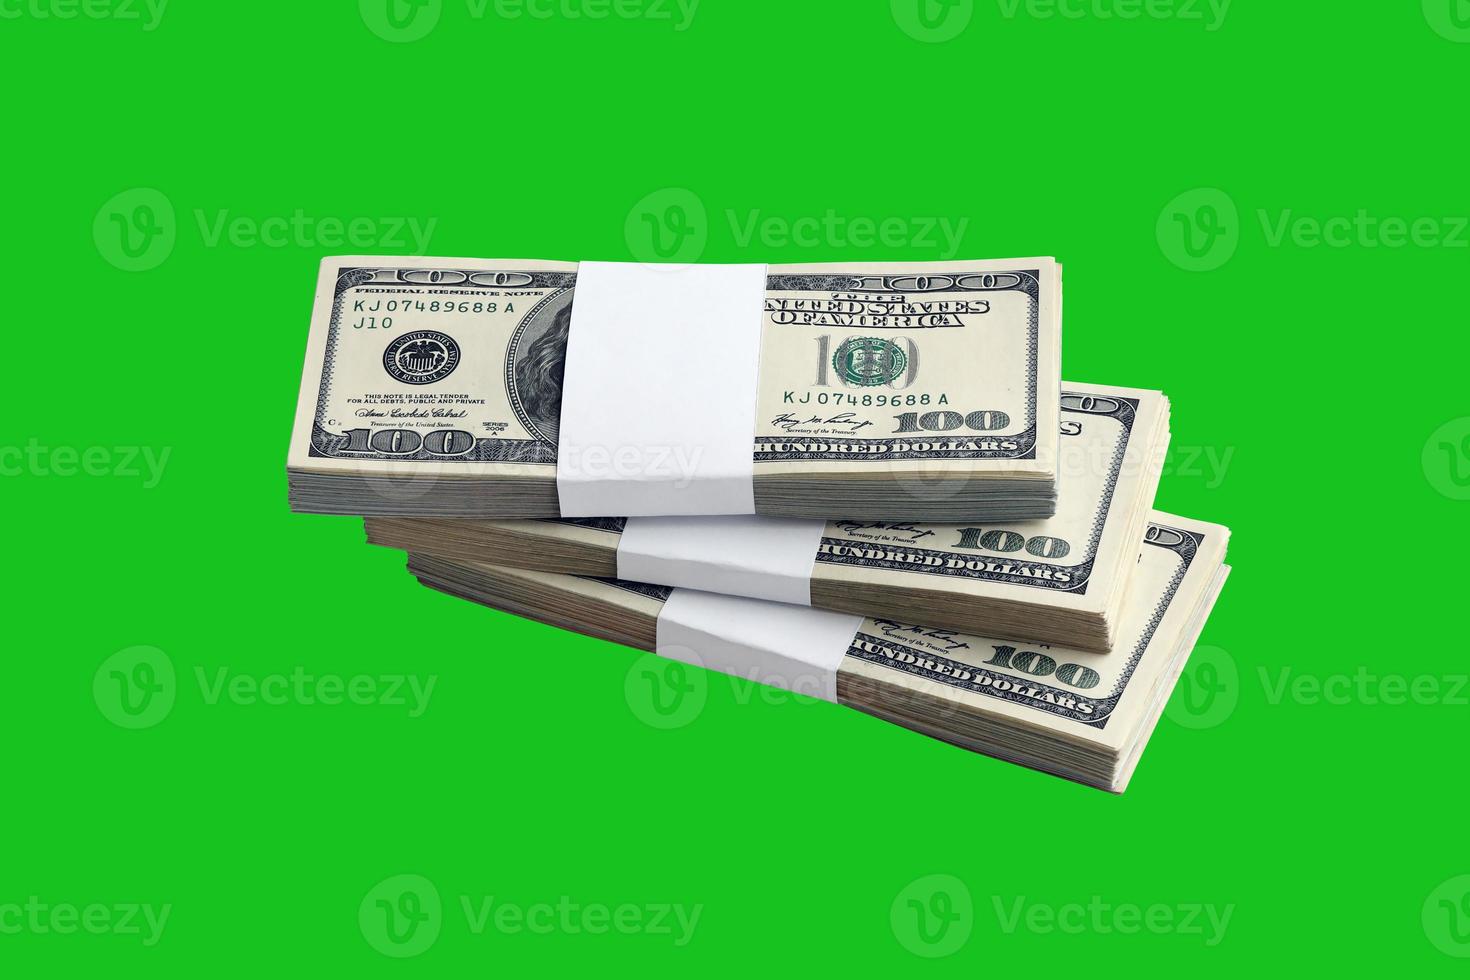 fajo de billetes de dólar estadounidense aislado en verde chroma keyer. paquete de dinero americano con alta resolución en máscara verde perfecta foto